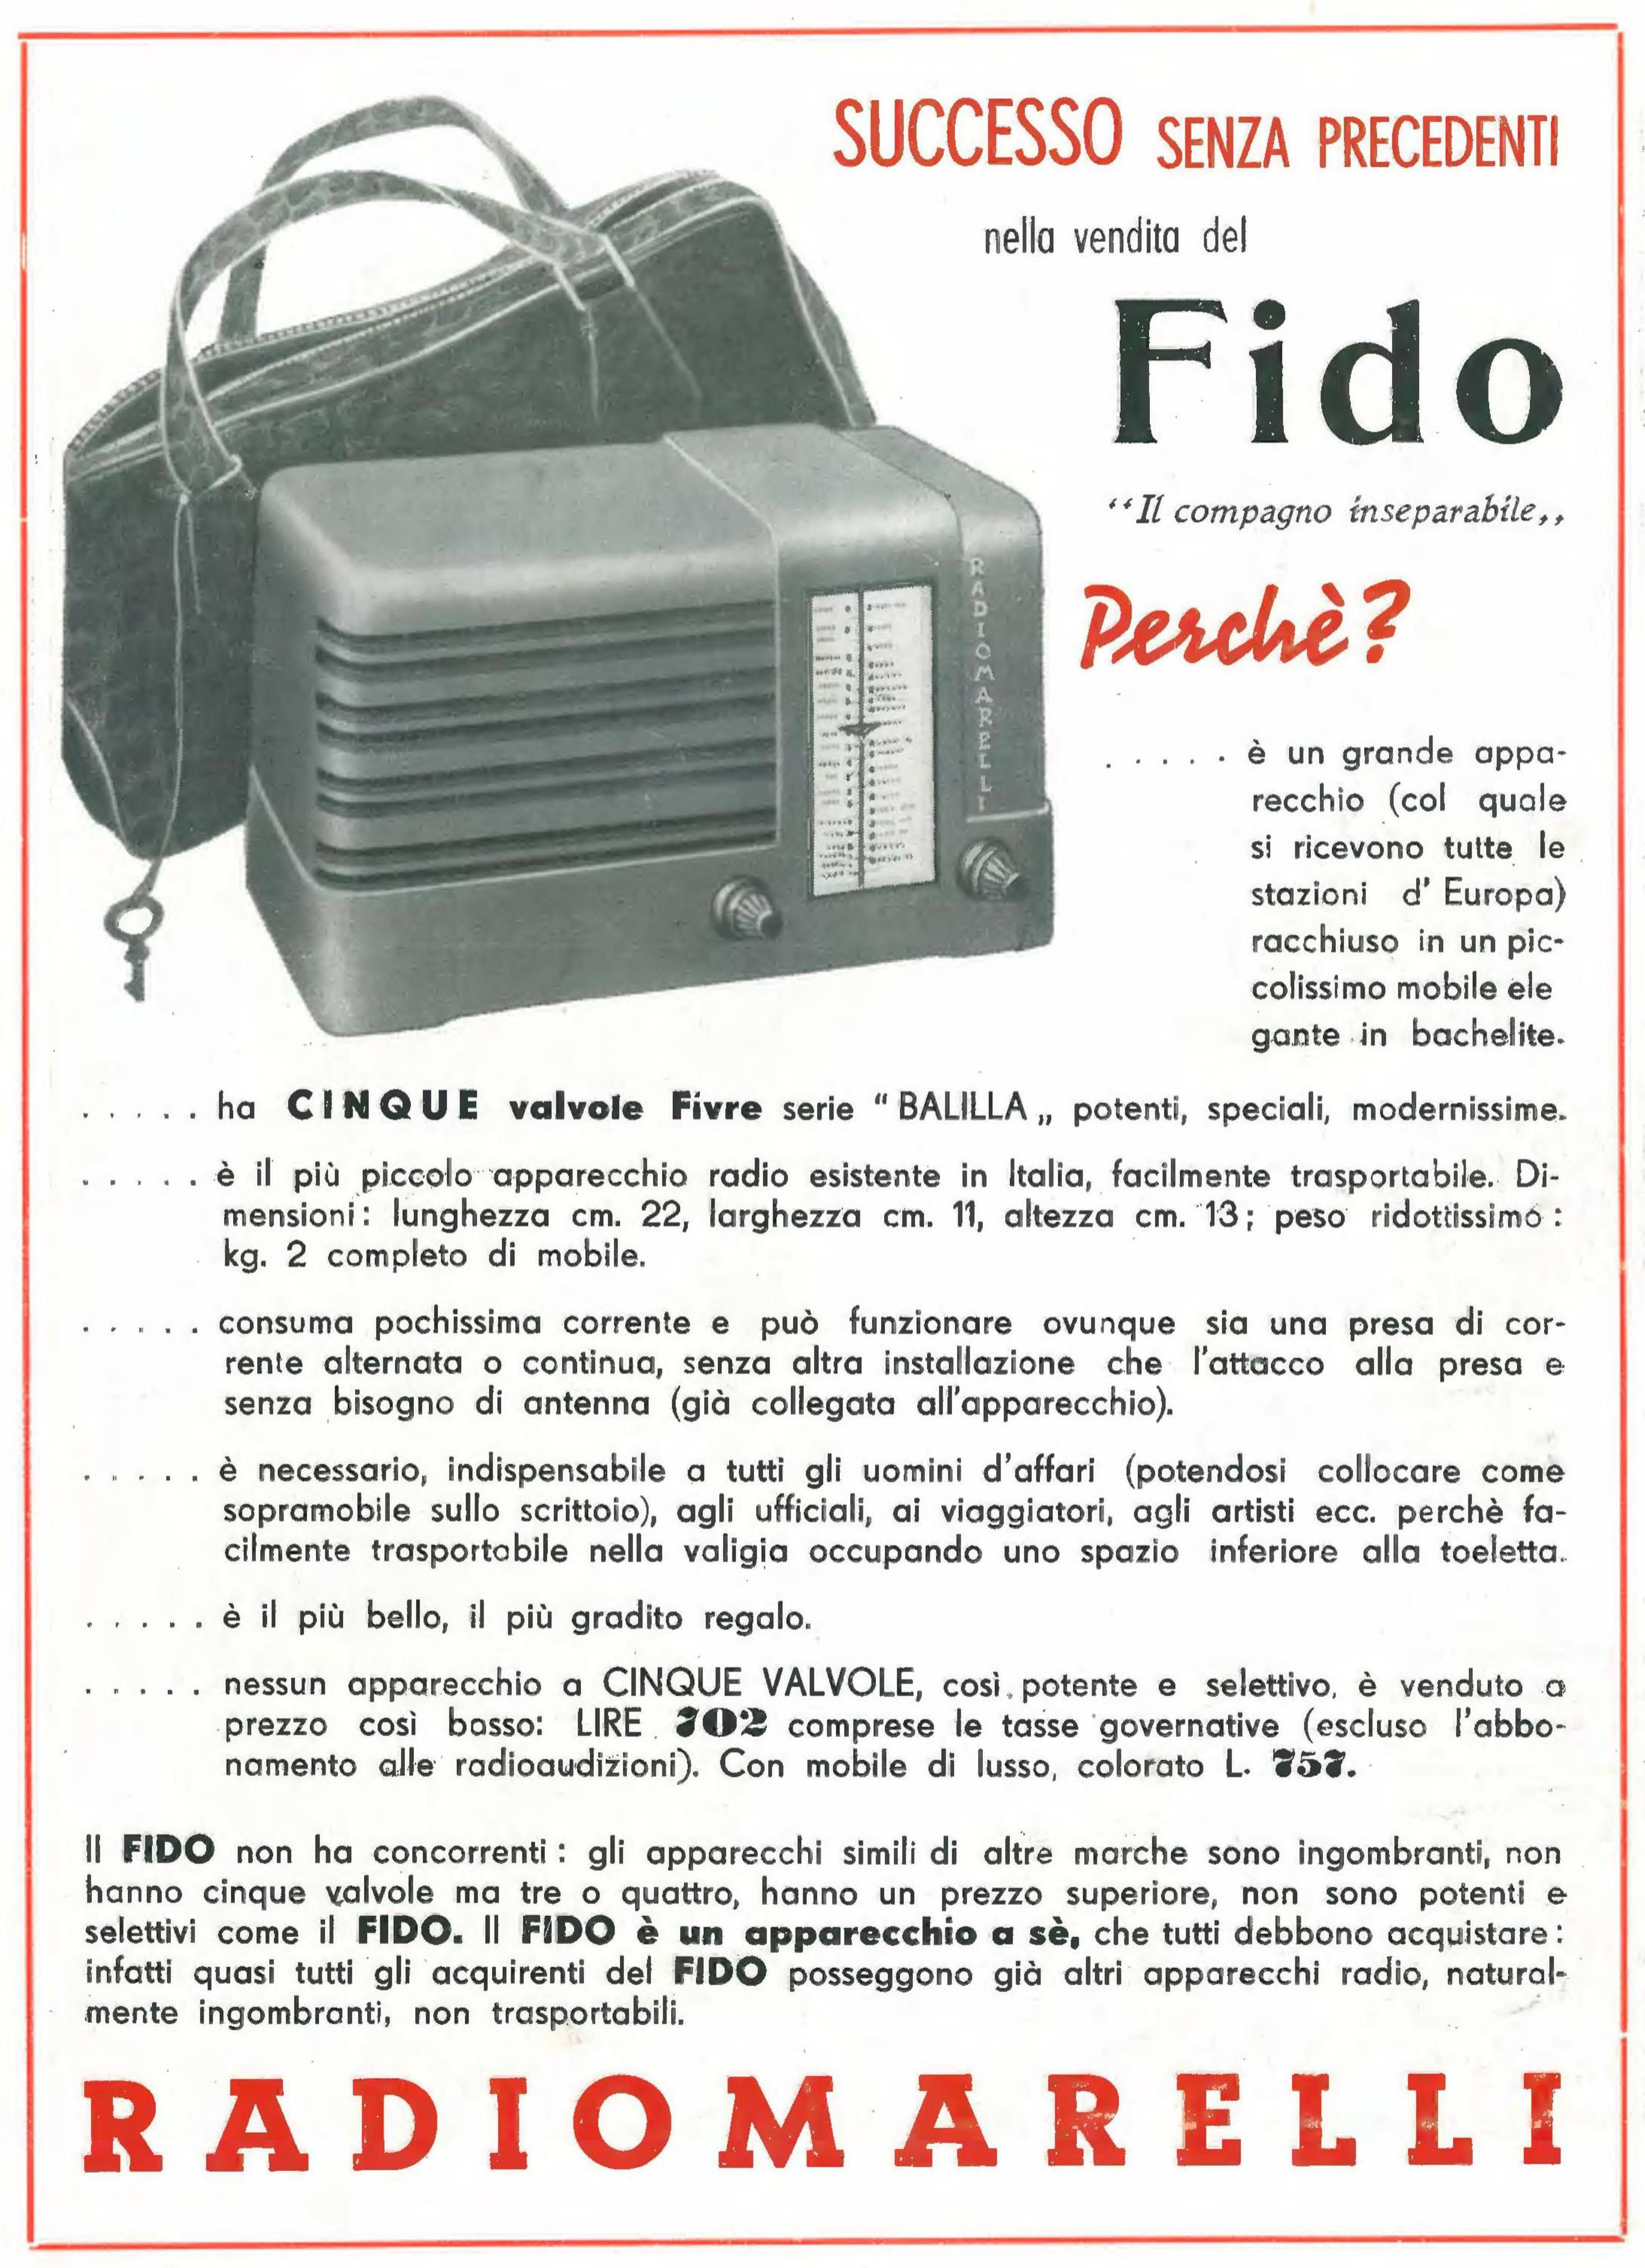 Radiomarelli 1939 084.jpg